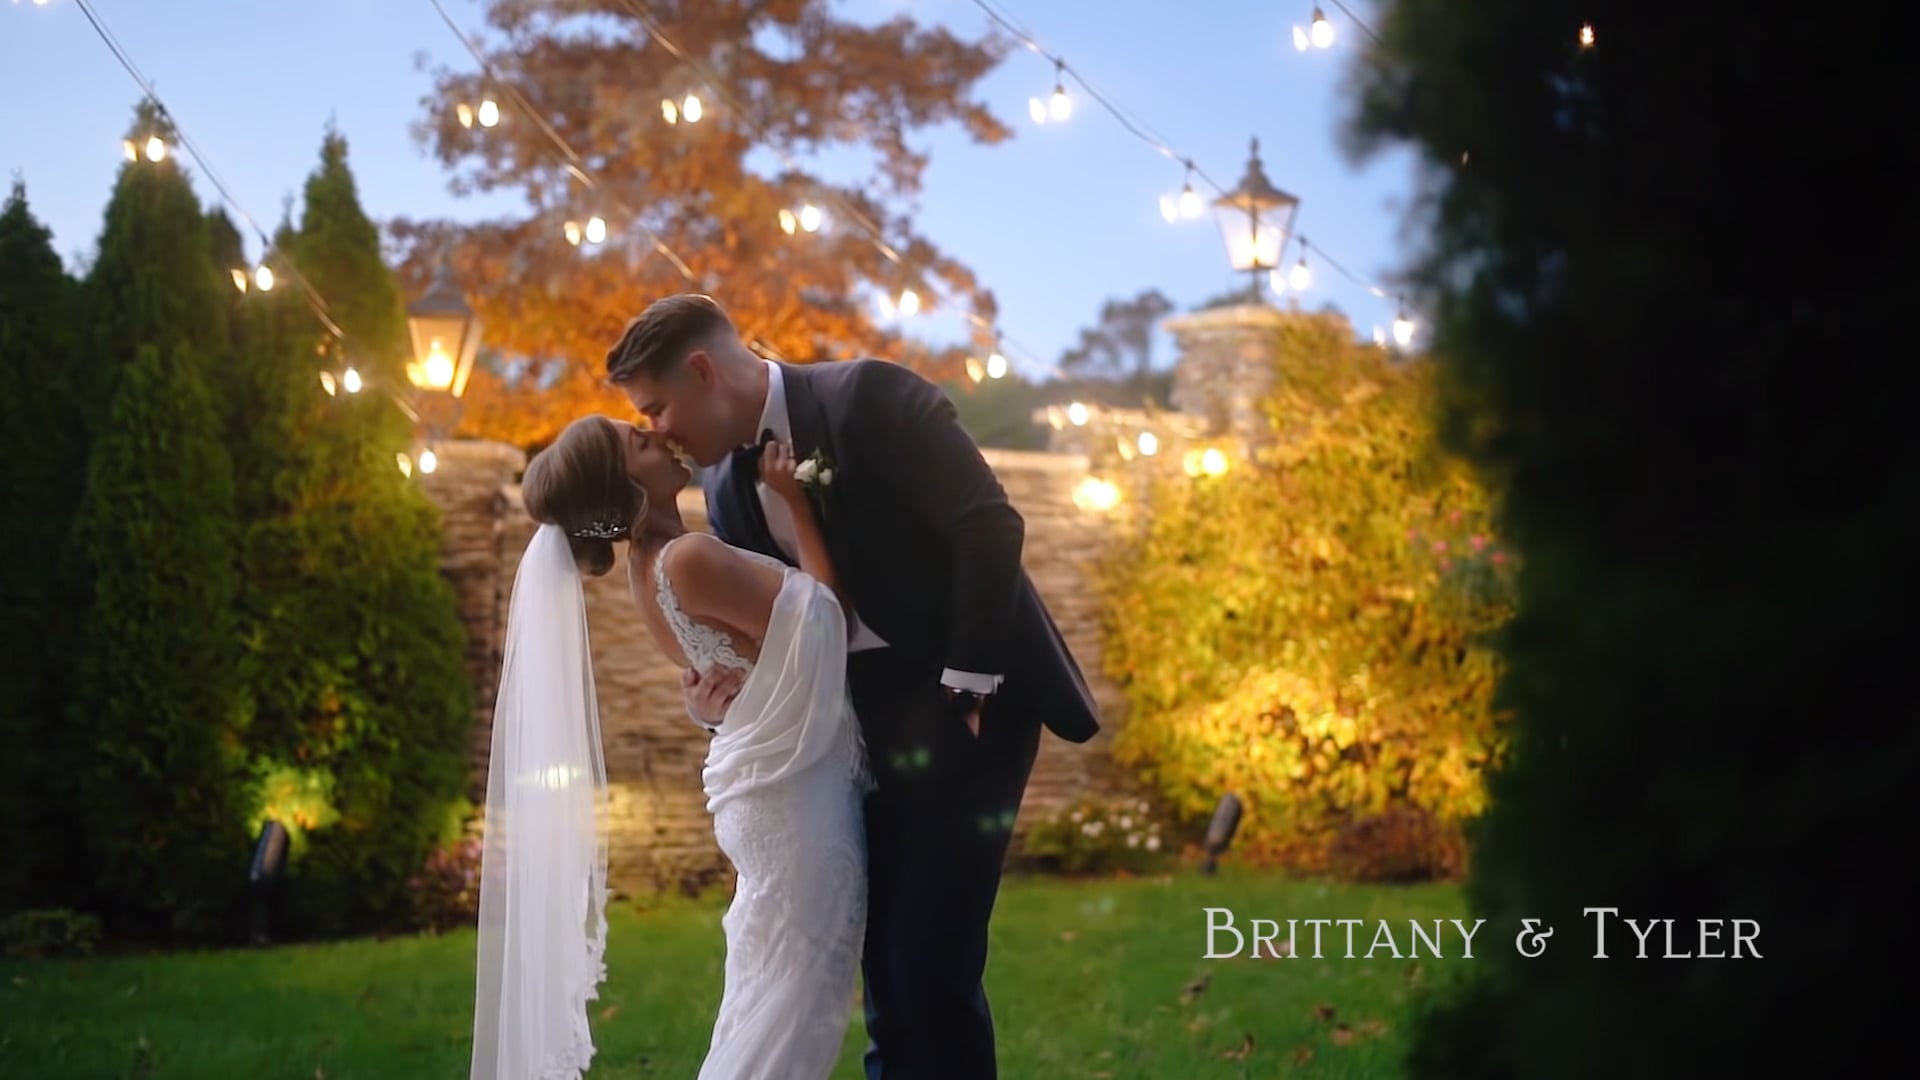 Brittany & Tyler // Beautiful Fall Wedding @ Long Island, NY